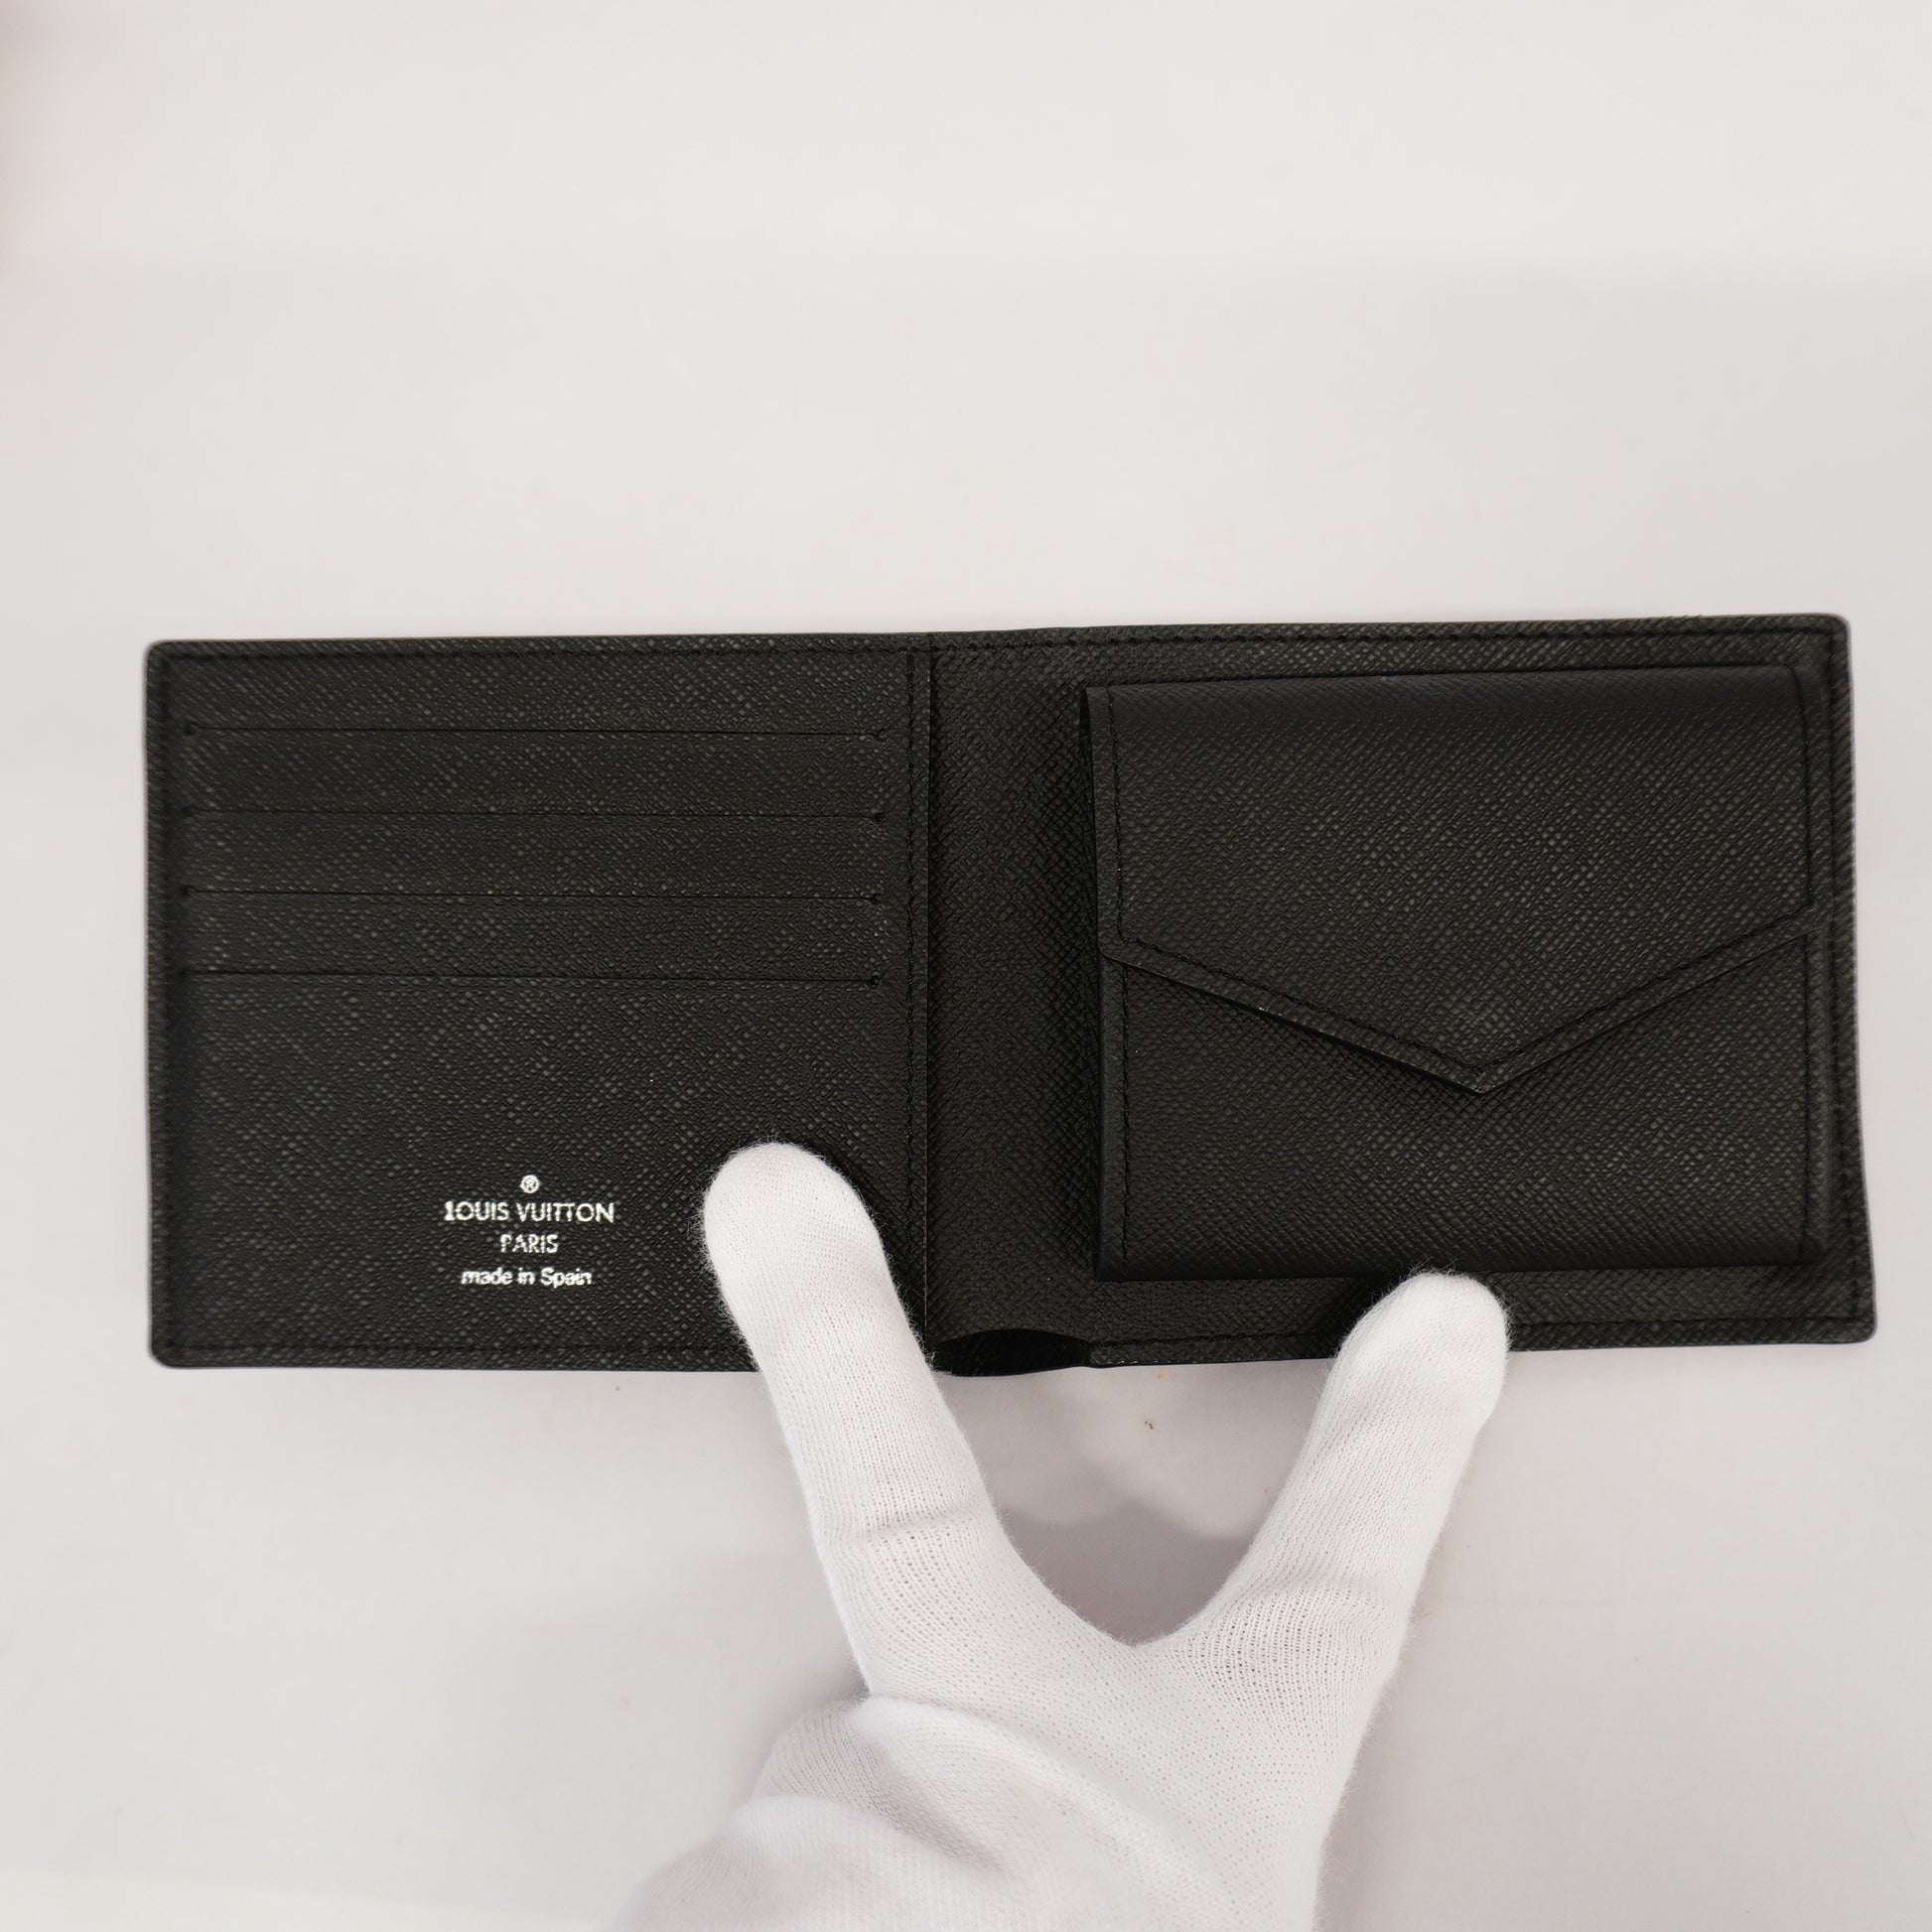 Shop Louis Vuitton MARCO Marco wallet (M62289) by design◇base